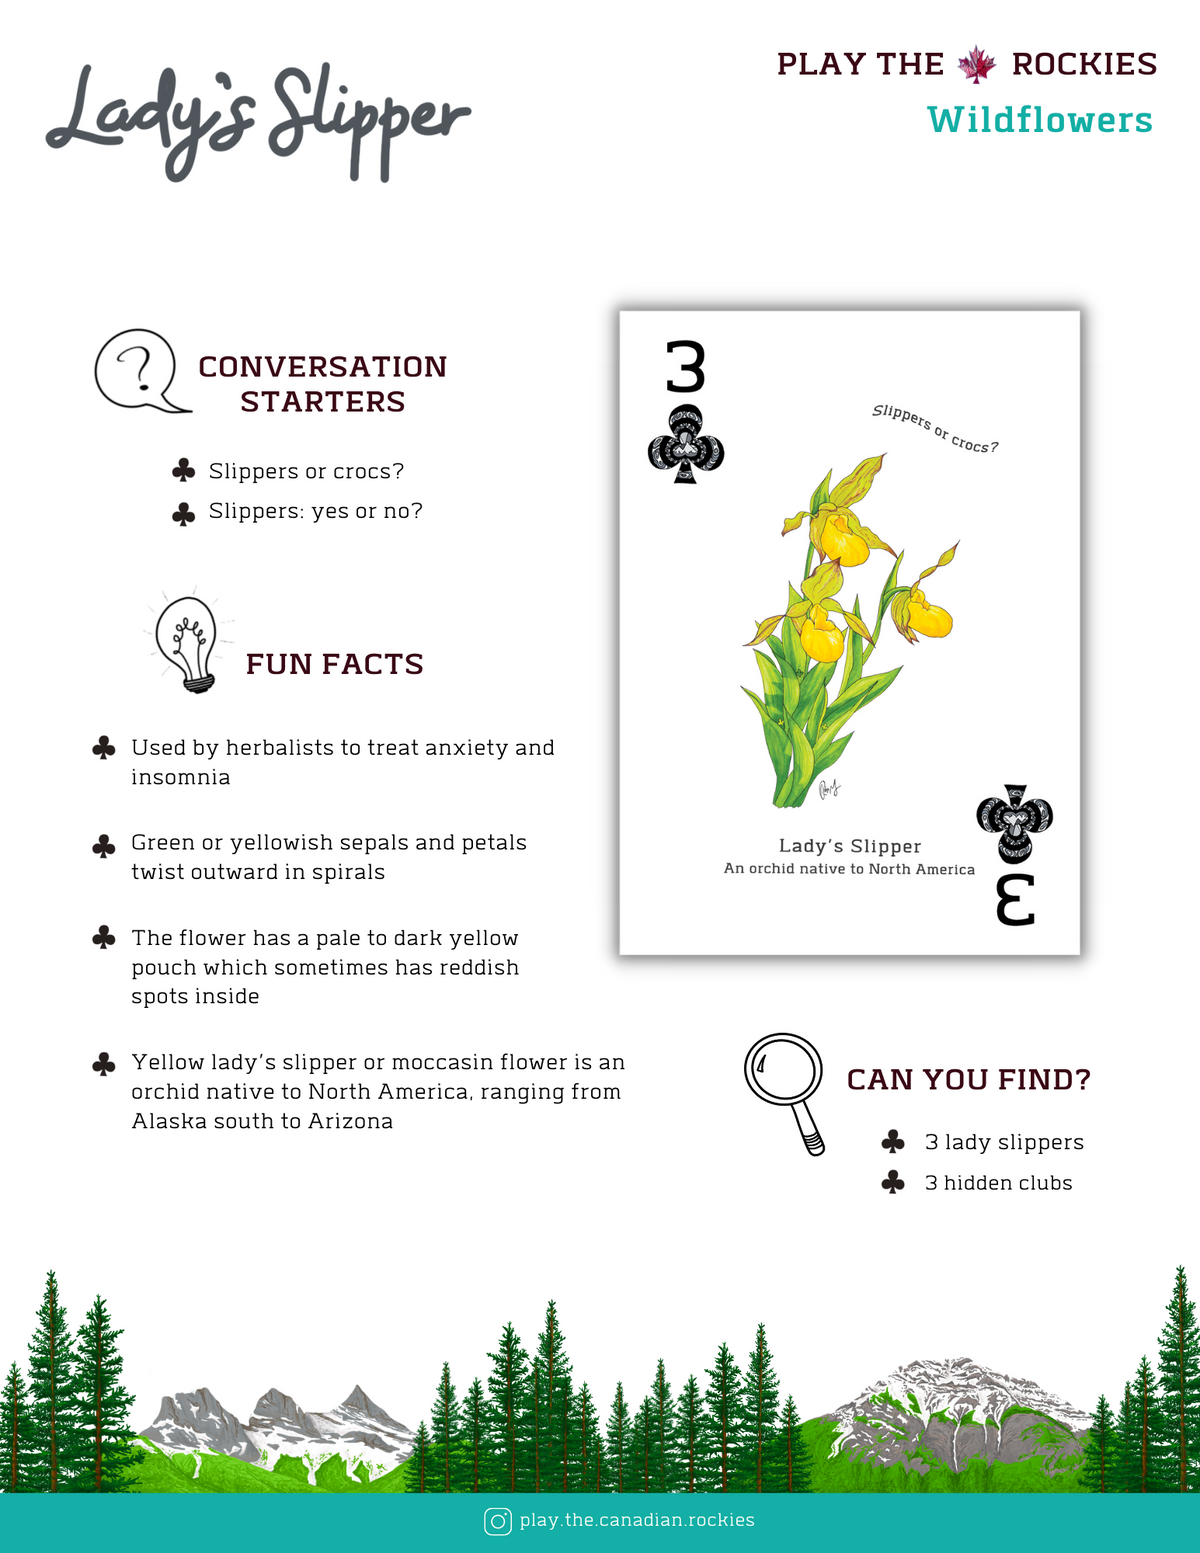 3 Lady's Slipper - Wildflowers - Information Sheet